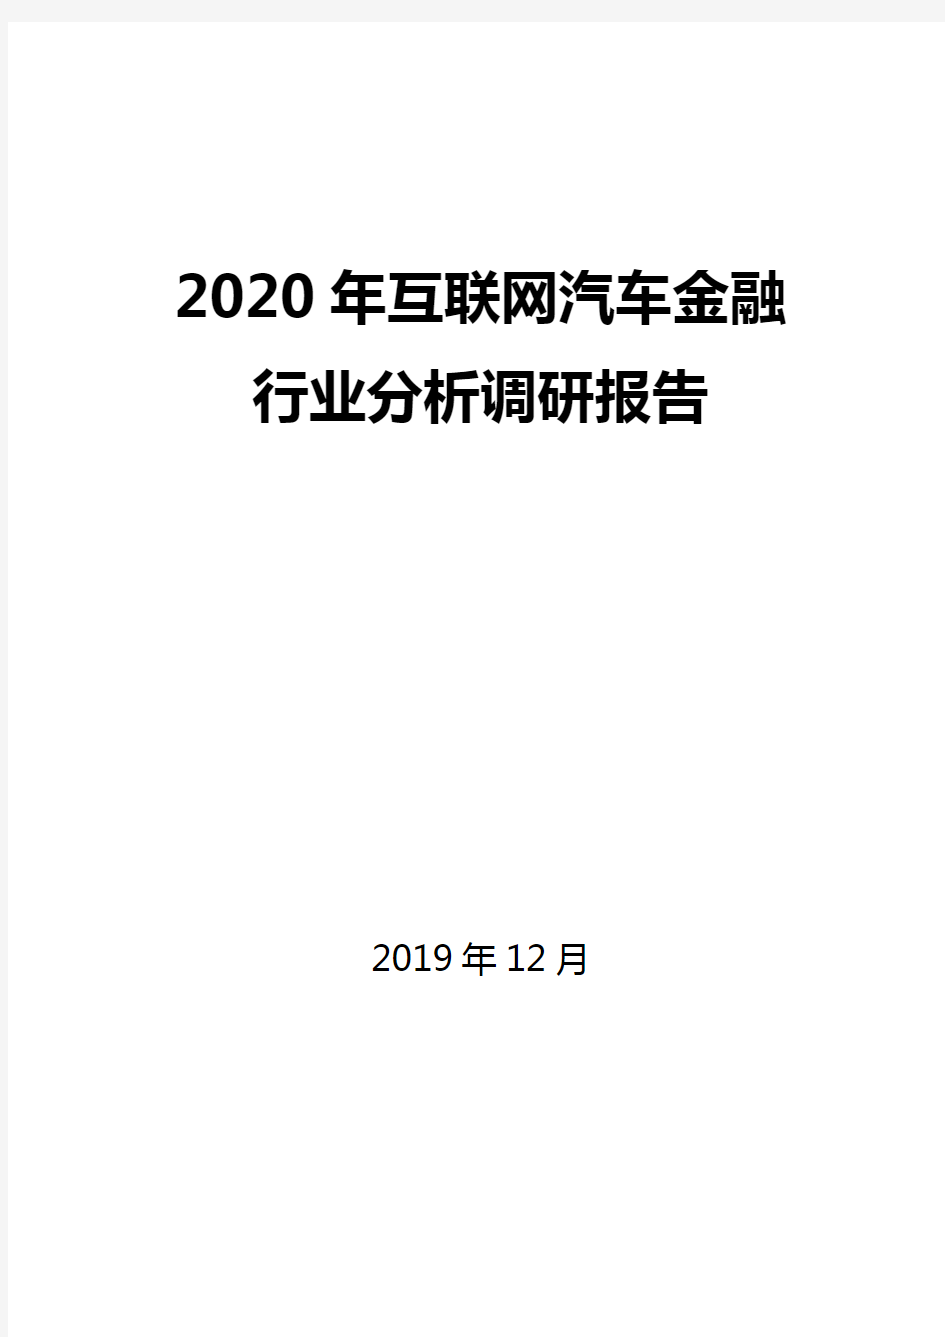 2020年互联网汽车金融行业分析调研报告